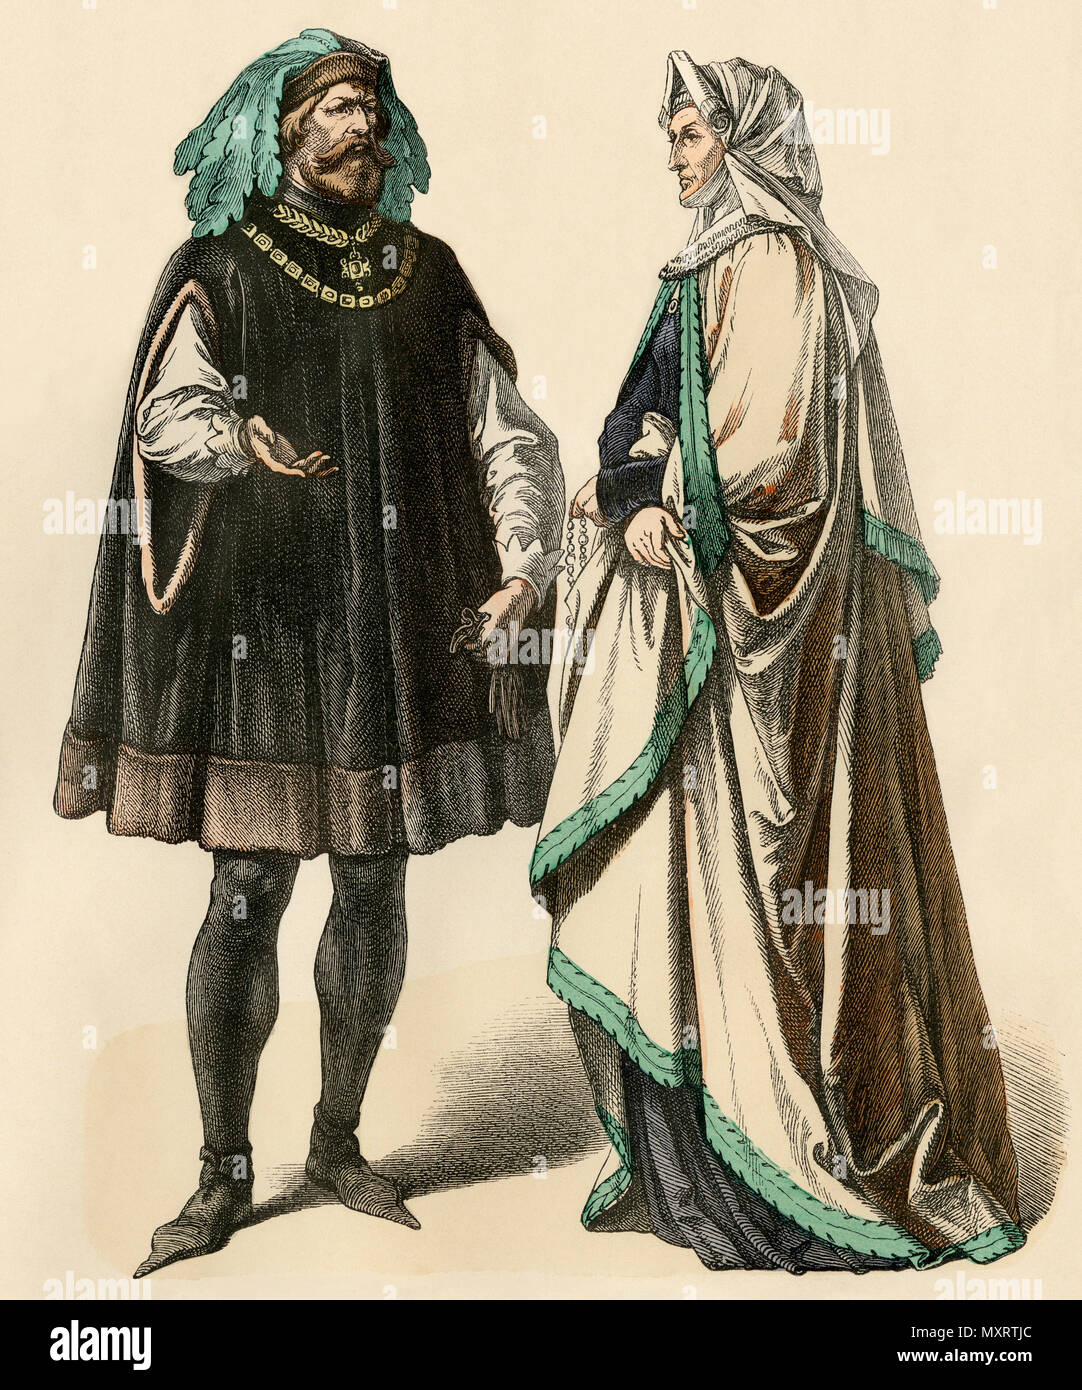 Middle ages nobleman immagini e fotografie stock ad alta risoluzione - Alamy